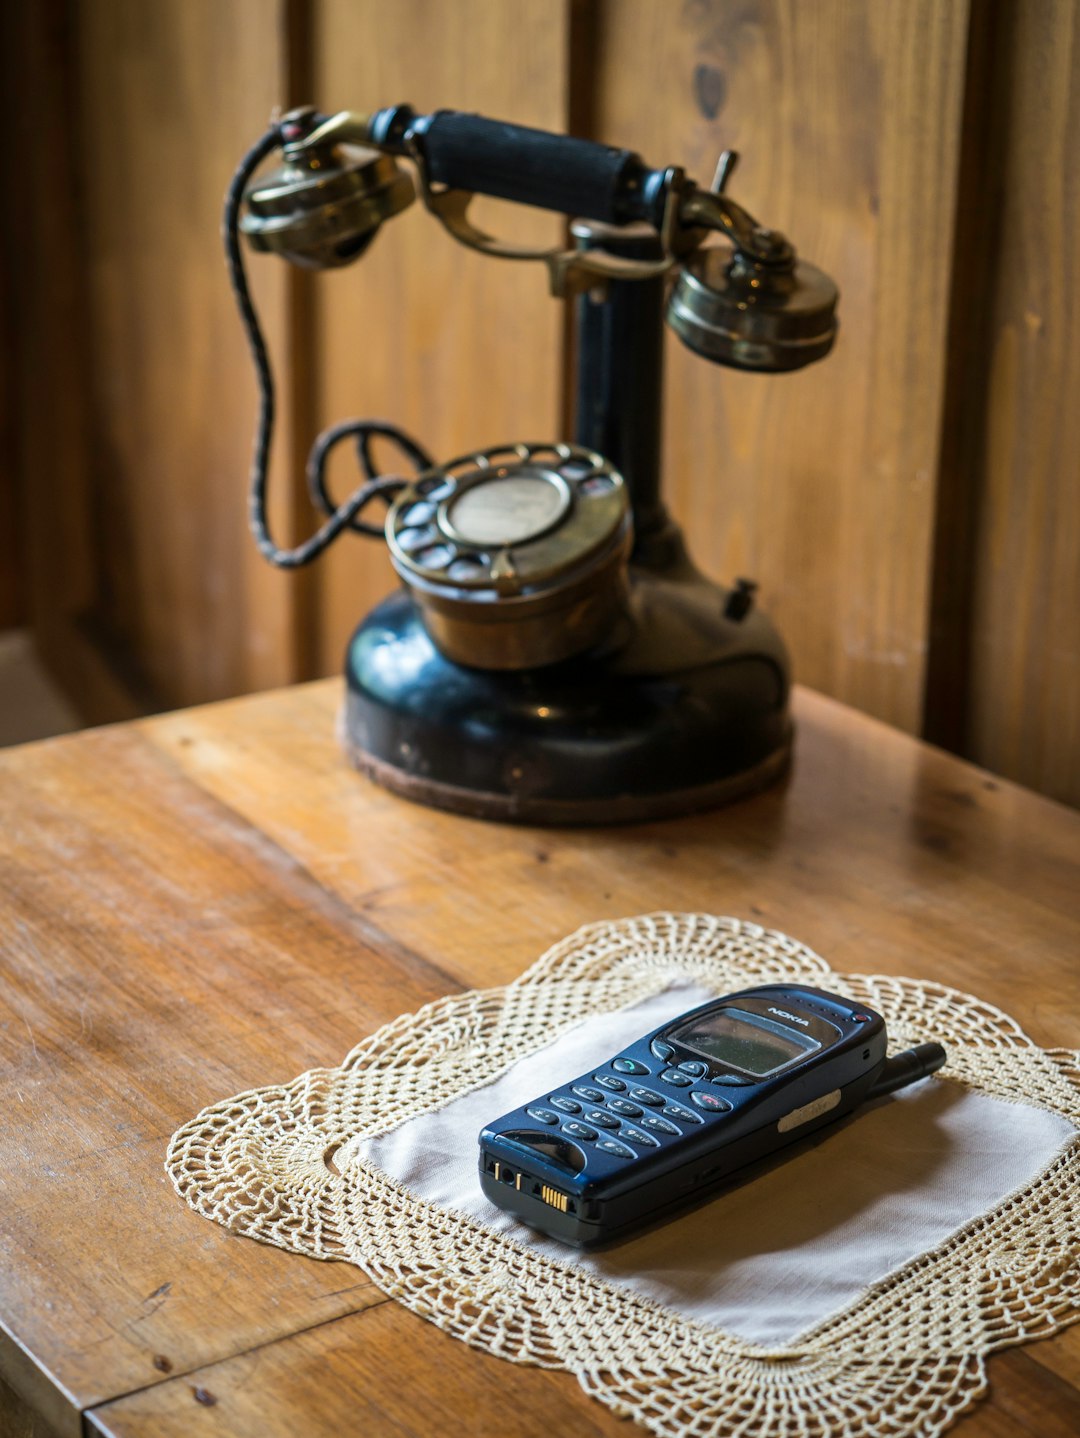 Telefone aus zwei Epochen. Telephones from two eras.